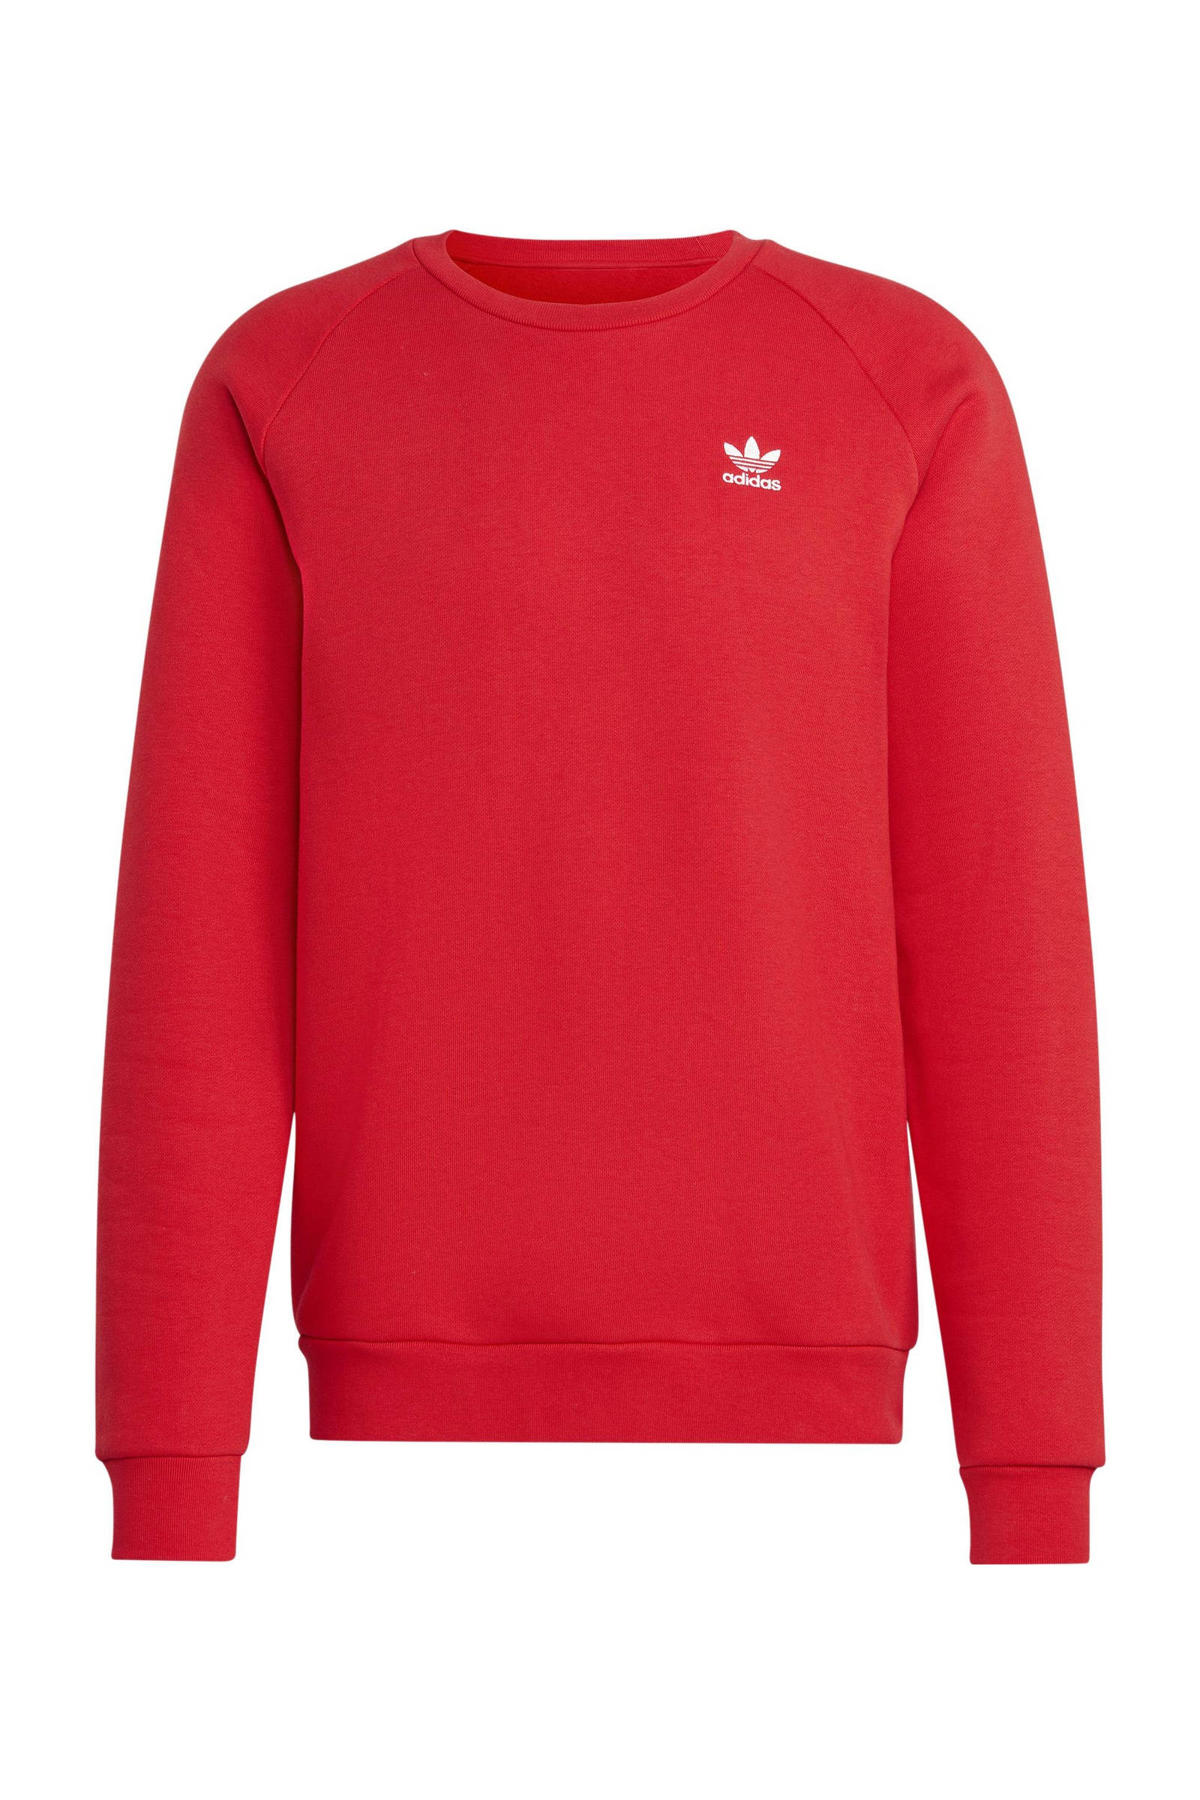 Ontwaken Onzuiver Wauw adidas Originals sweater rood | wehkamp